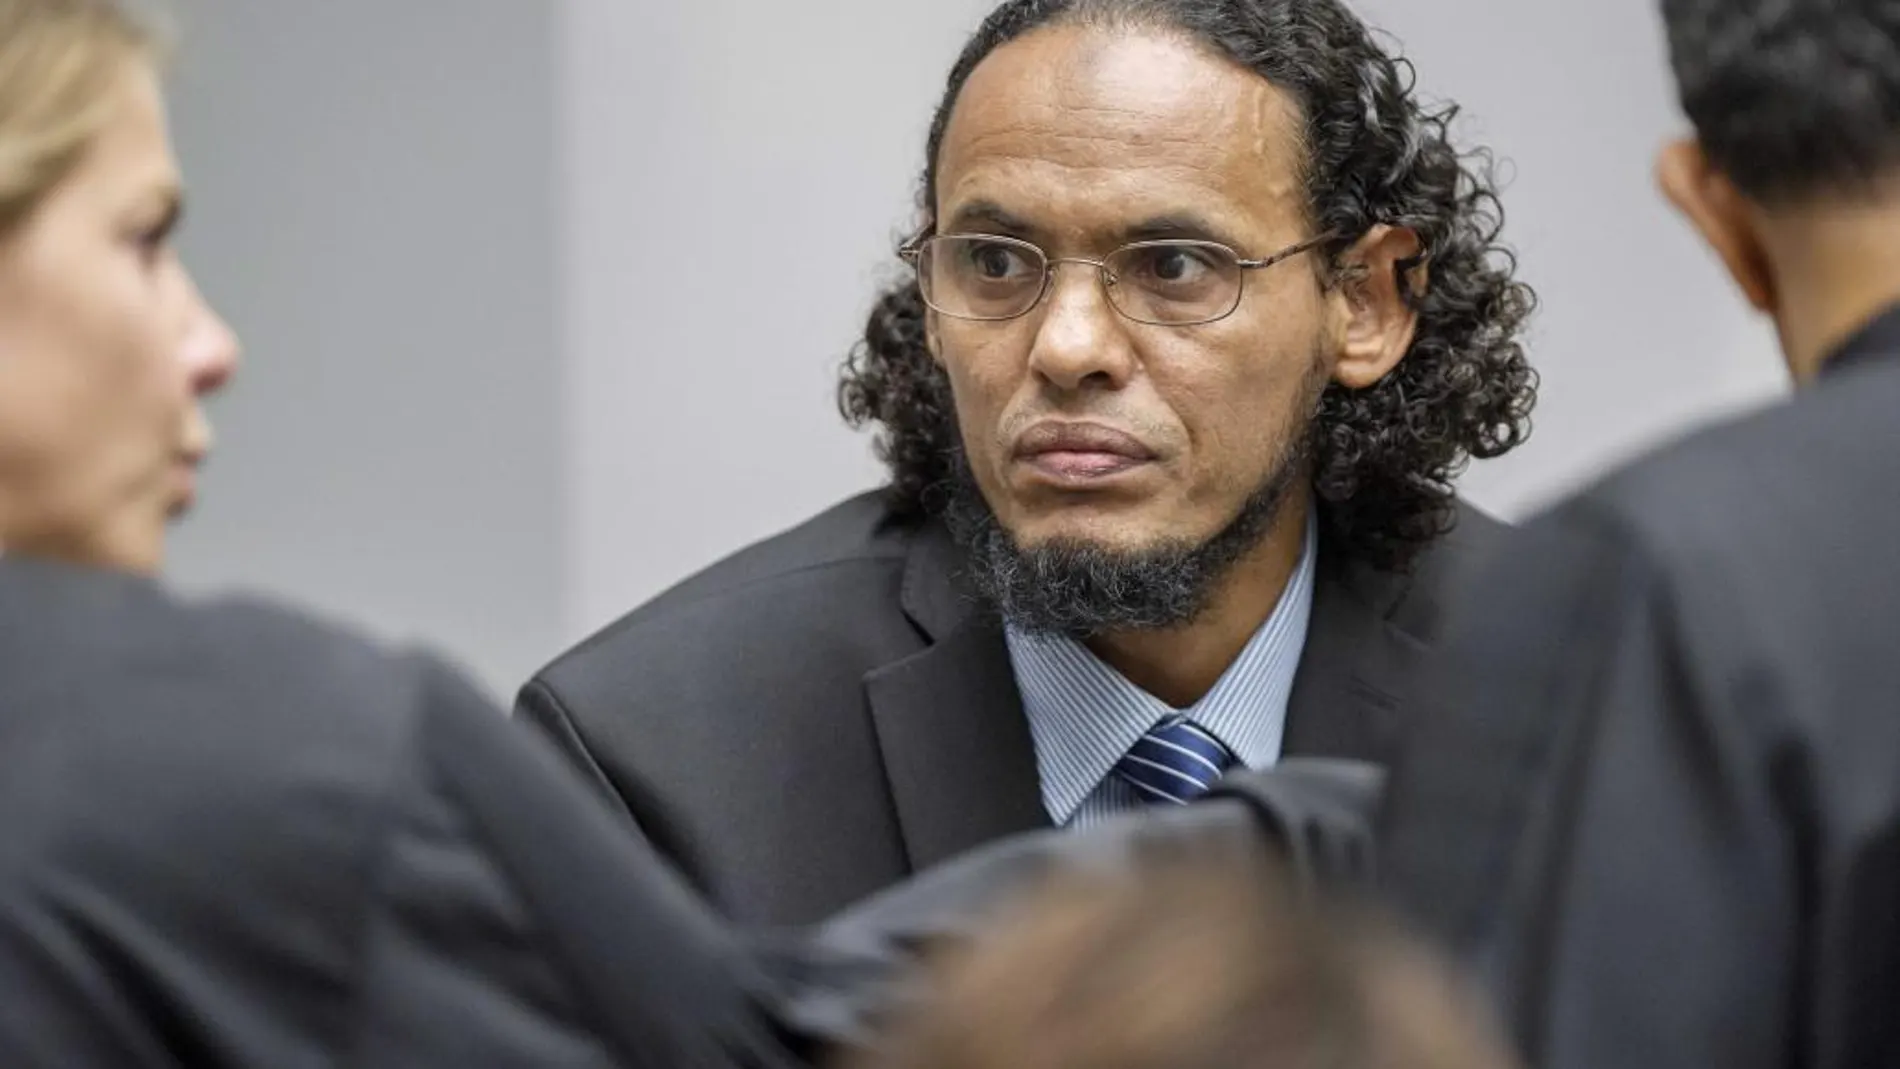 El acusado Achmad al Mahdi al Faqi, alias "Abu Turab", comparece ante la Corte Penal Internacional (CPI).